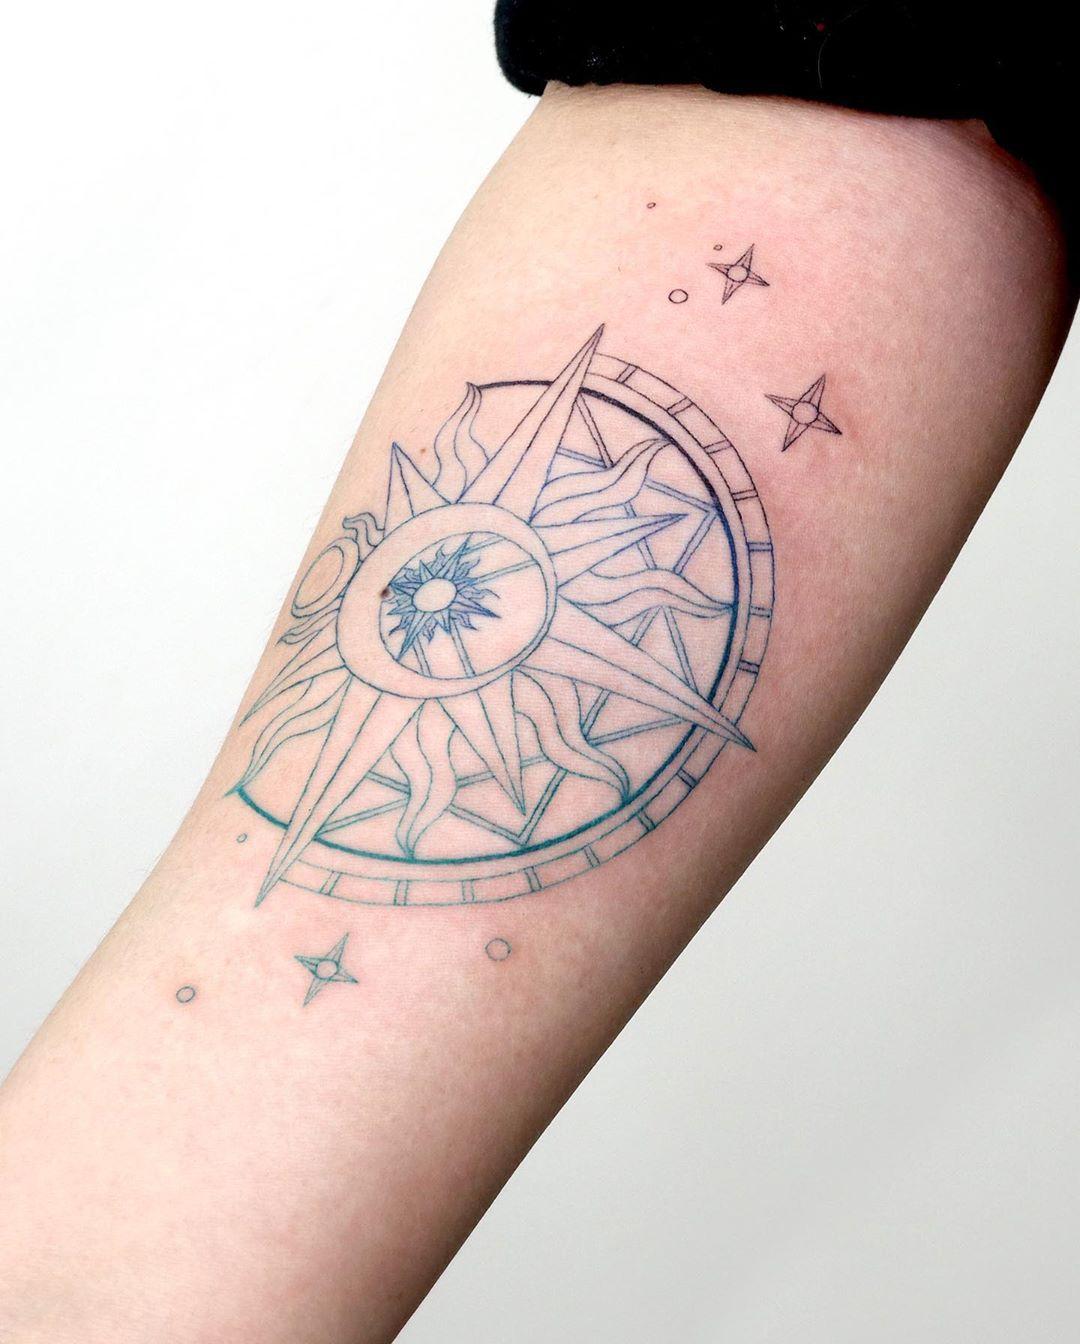 Clow card️ tattoo by @tattooist_sigak - Tattoogrid.net